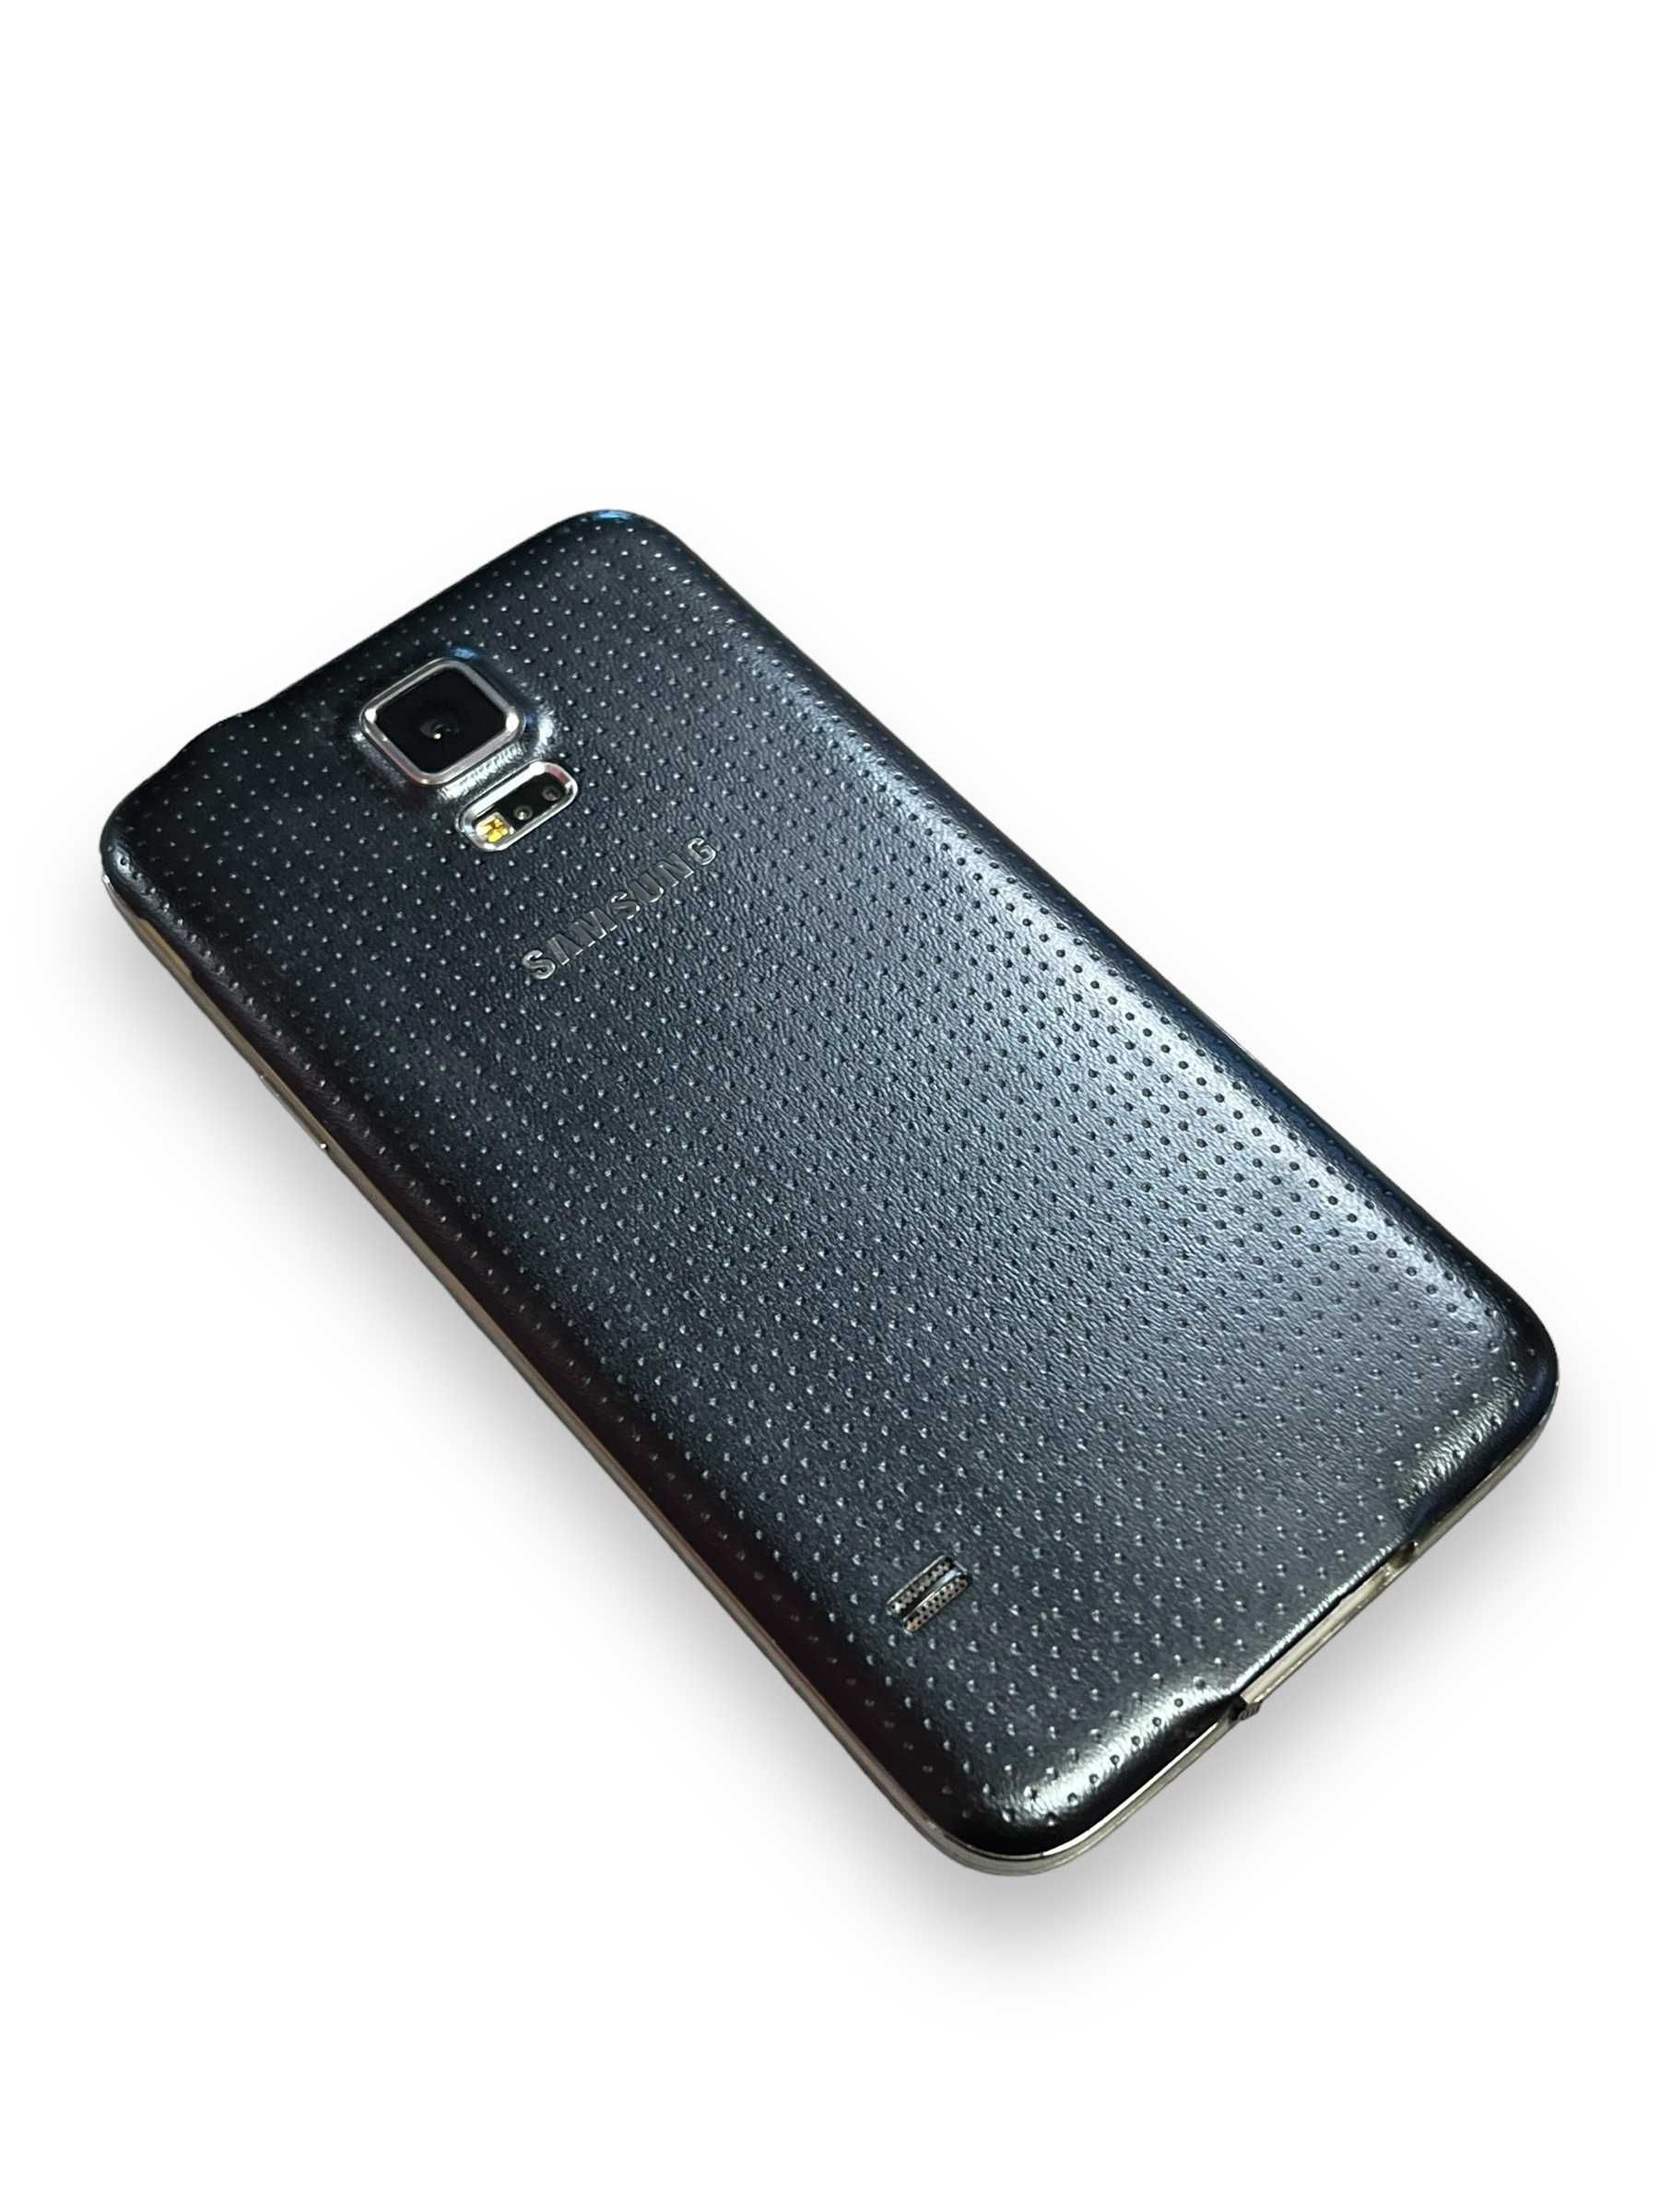 Smartfon Samsung Galaxy S5 16 GB